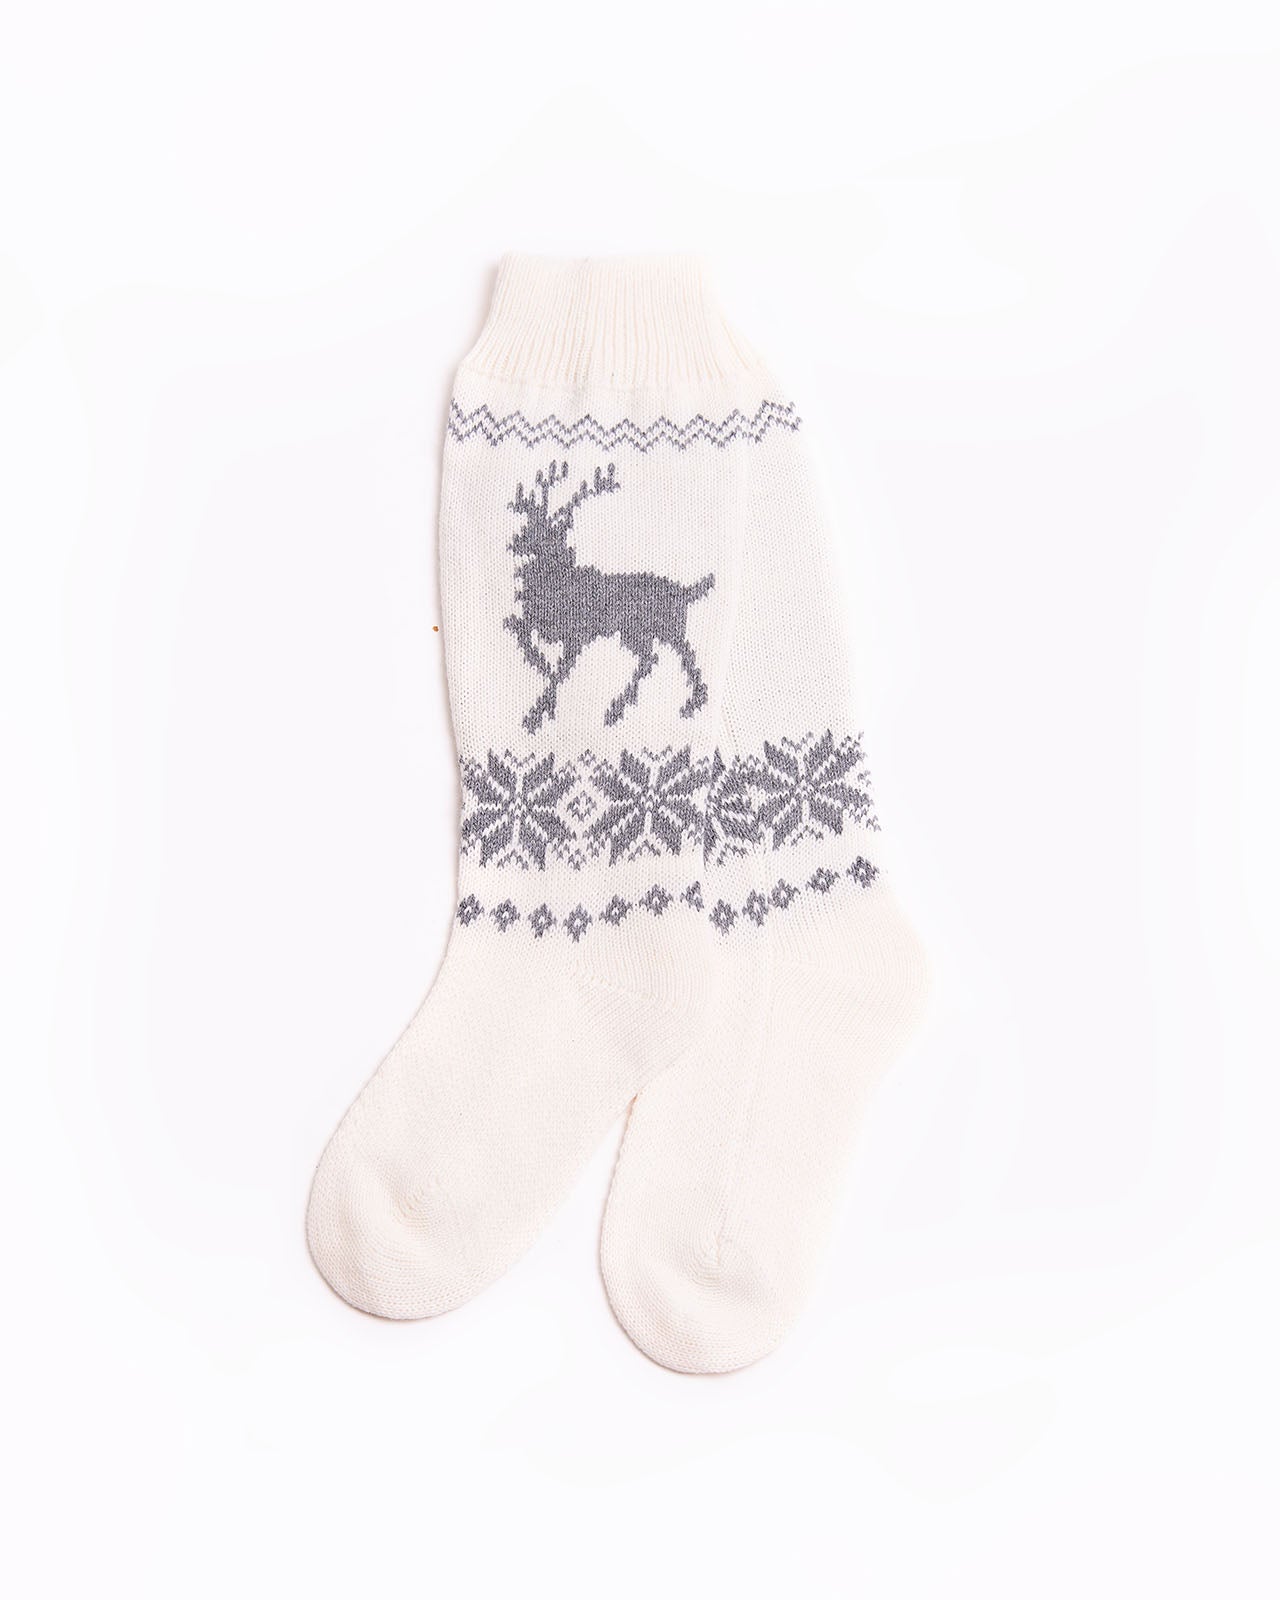 Wool long socks with Reindeers